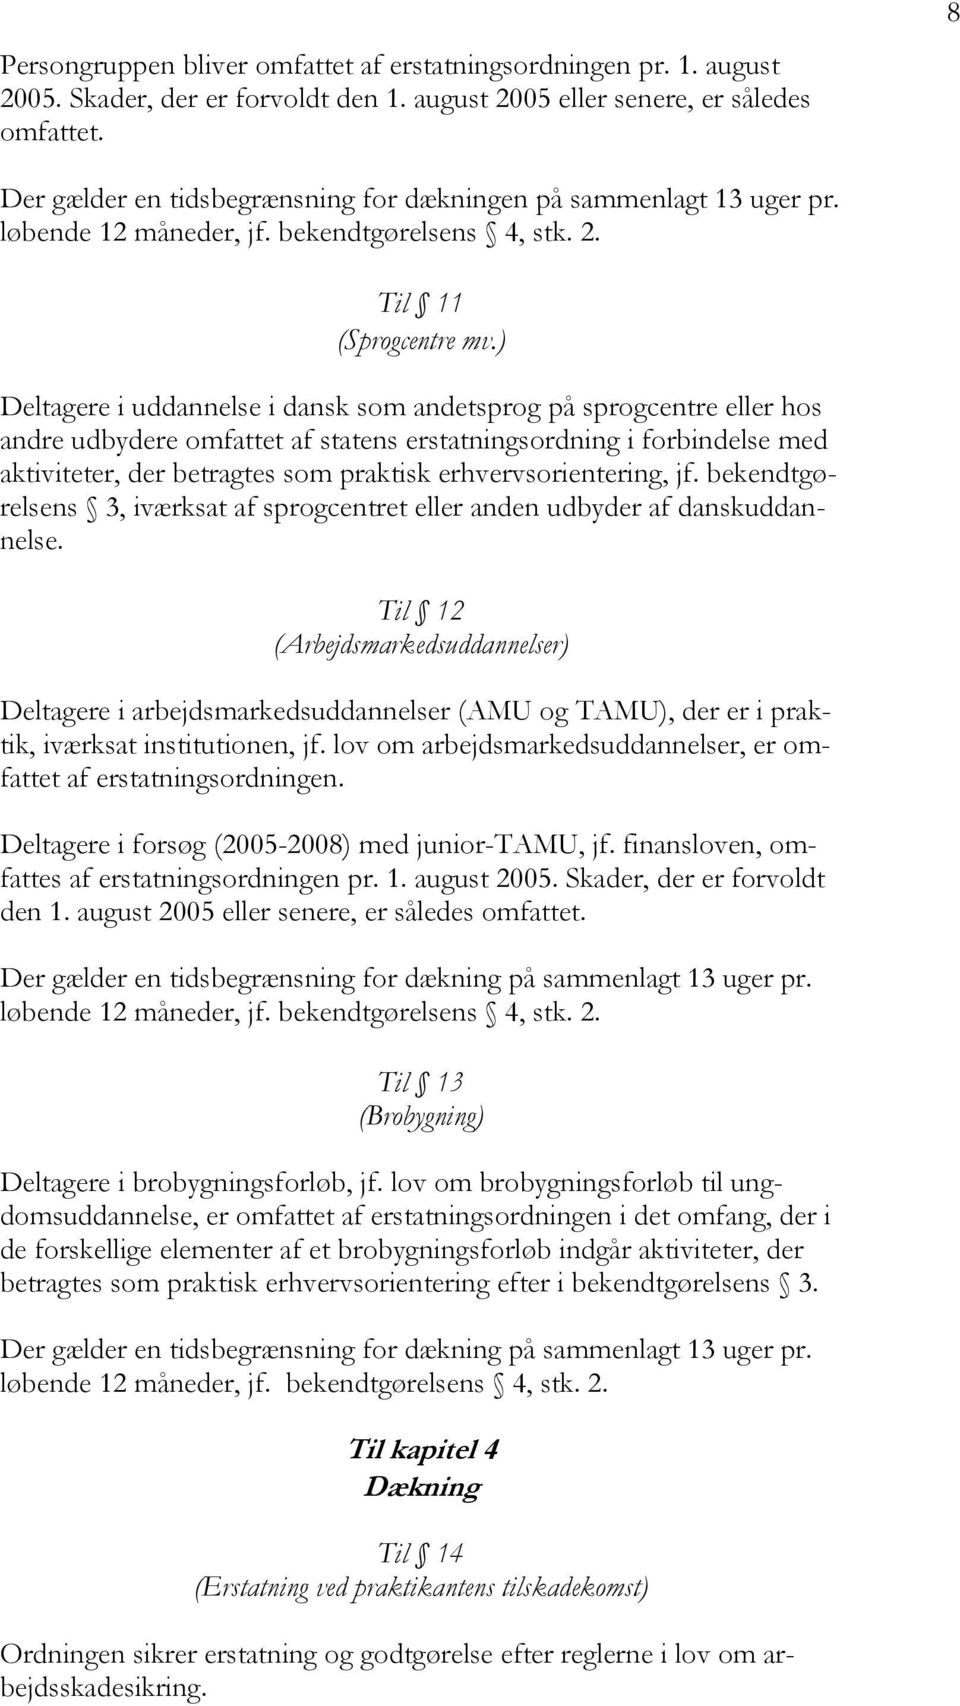 ) Deltagere i uddannelse i dansk som andetsprog på sprogcentre eller hos andre udbydere omfattet af statens erstatningsordning i forbindelse med aktiviteter, der betragtes som praktisk